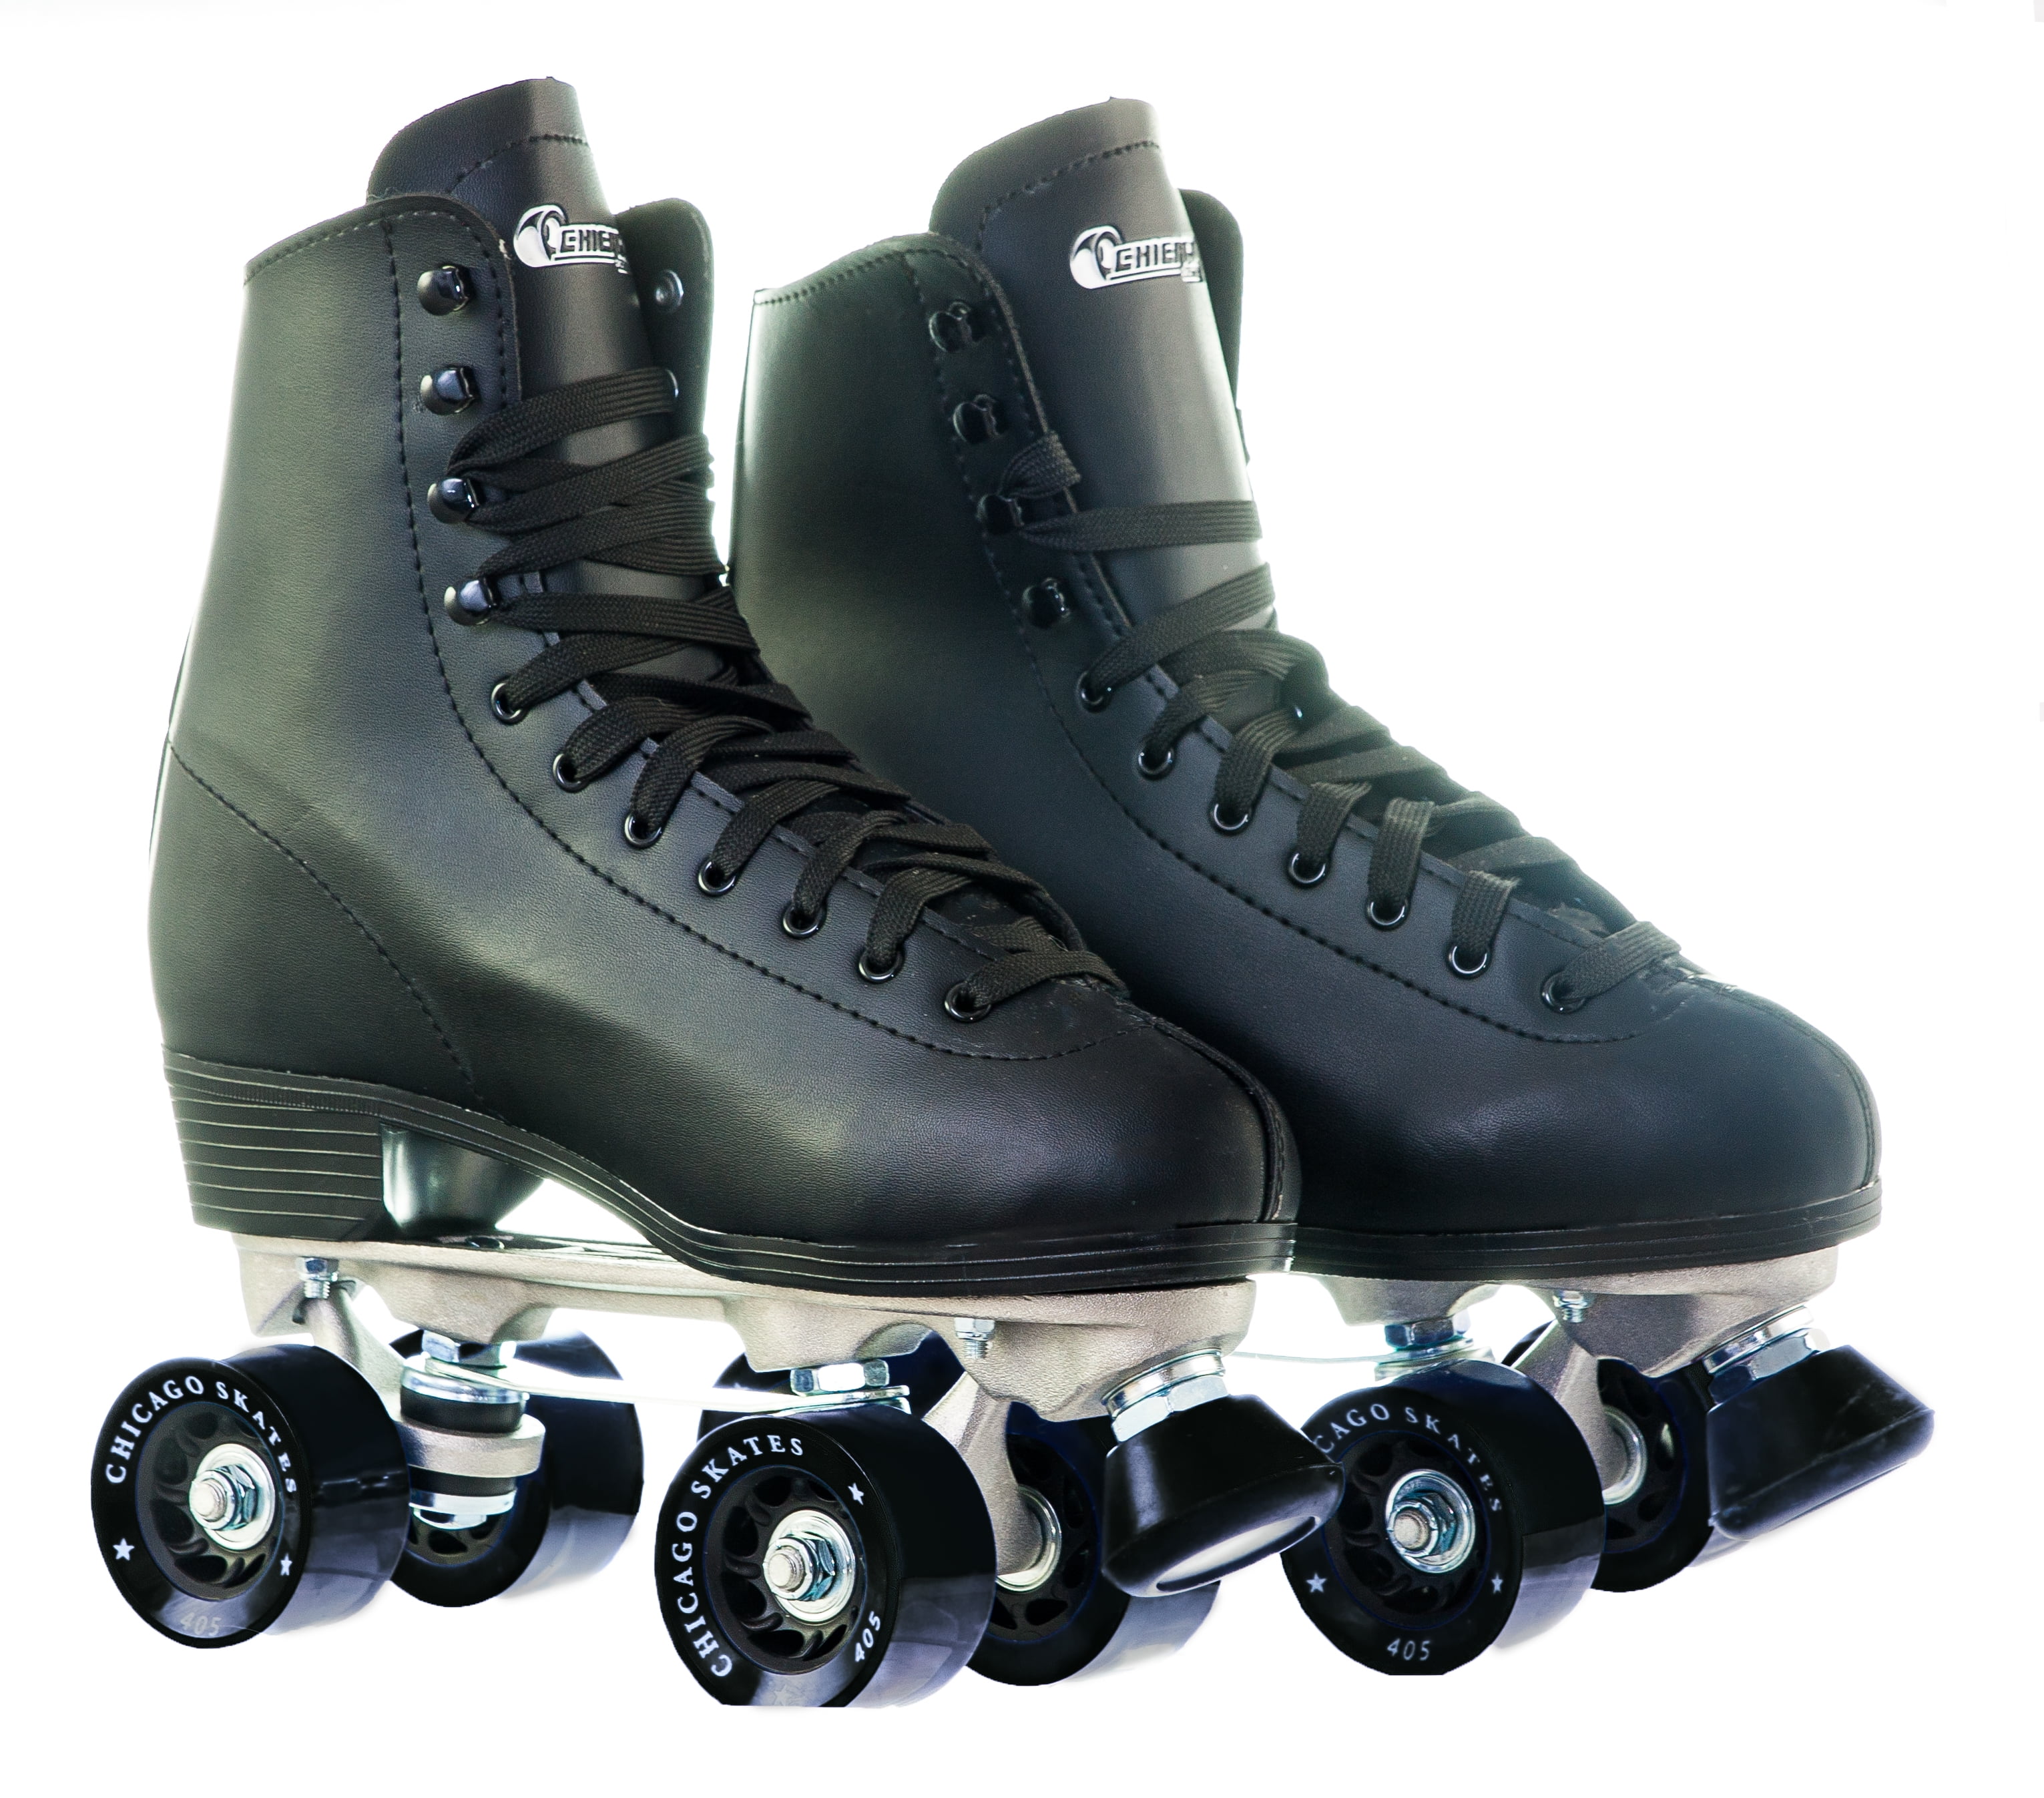 Chicago Men S Deluxe Quad Roller Skates Black Classic Rink Skate Size ...